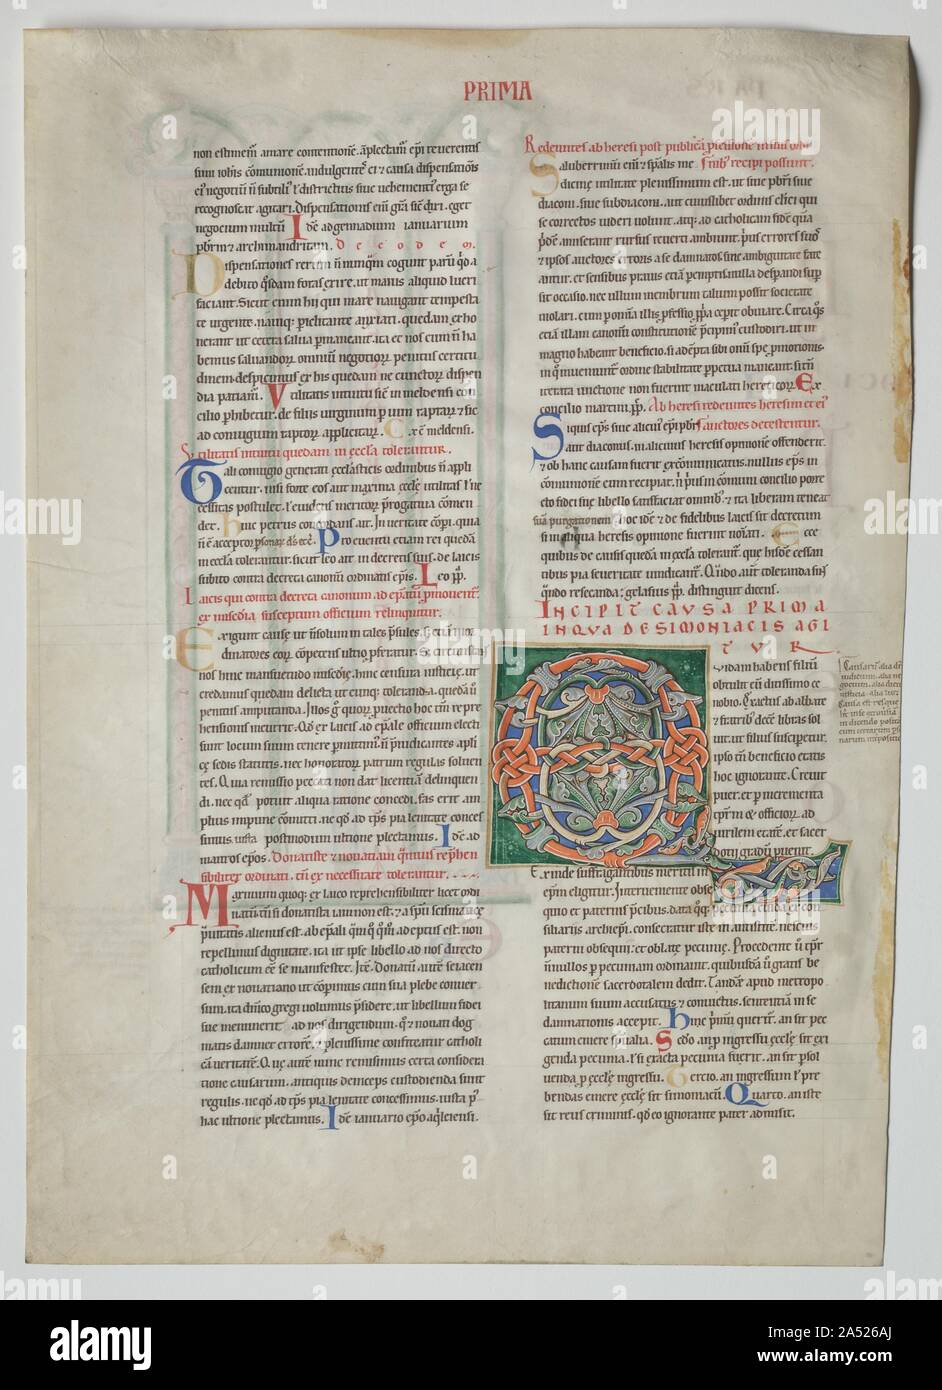 Une feuille d'un Decretum par Gratien : Initiale décorée Q[uidam obtulit habens filium] et Quadruple Arcade avec Concordance des alphabets latin et grec , ch. 1160-1165. Cette page a été excisée à partir d'une copie du manuel de la loi de l'église connue sous le nom de Decretum écrit par Gratien, un moine camaldule italien à Bologne active d'environ 1130 à 1140. L'objectif de la feuille est décoré d'une grande lettre Q avec spirale de pétales de lotus en présentant le premier causa , ou cas de droit. Le texte commence, "un homme ayant un fils lui a offert à un cloître très riche." Cette affaire concerne la définition Banque D'Images